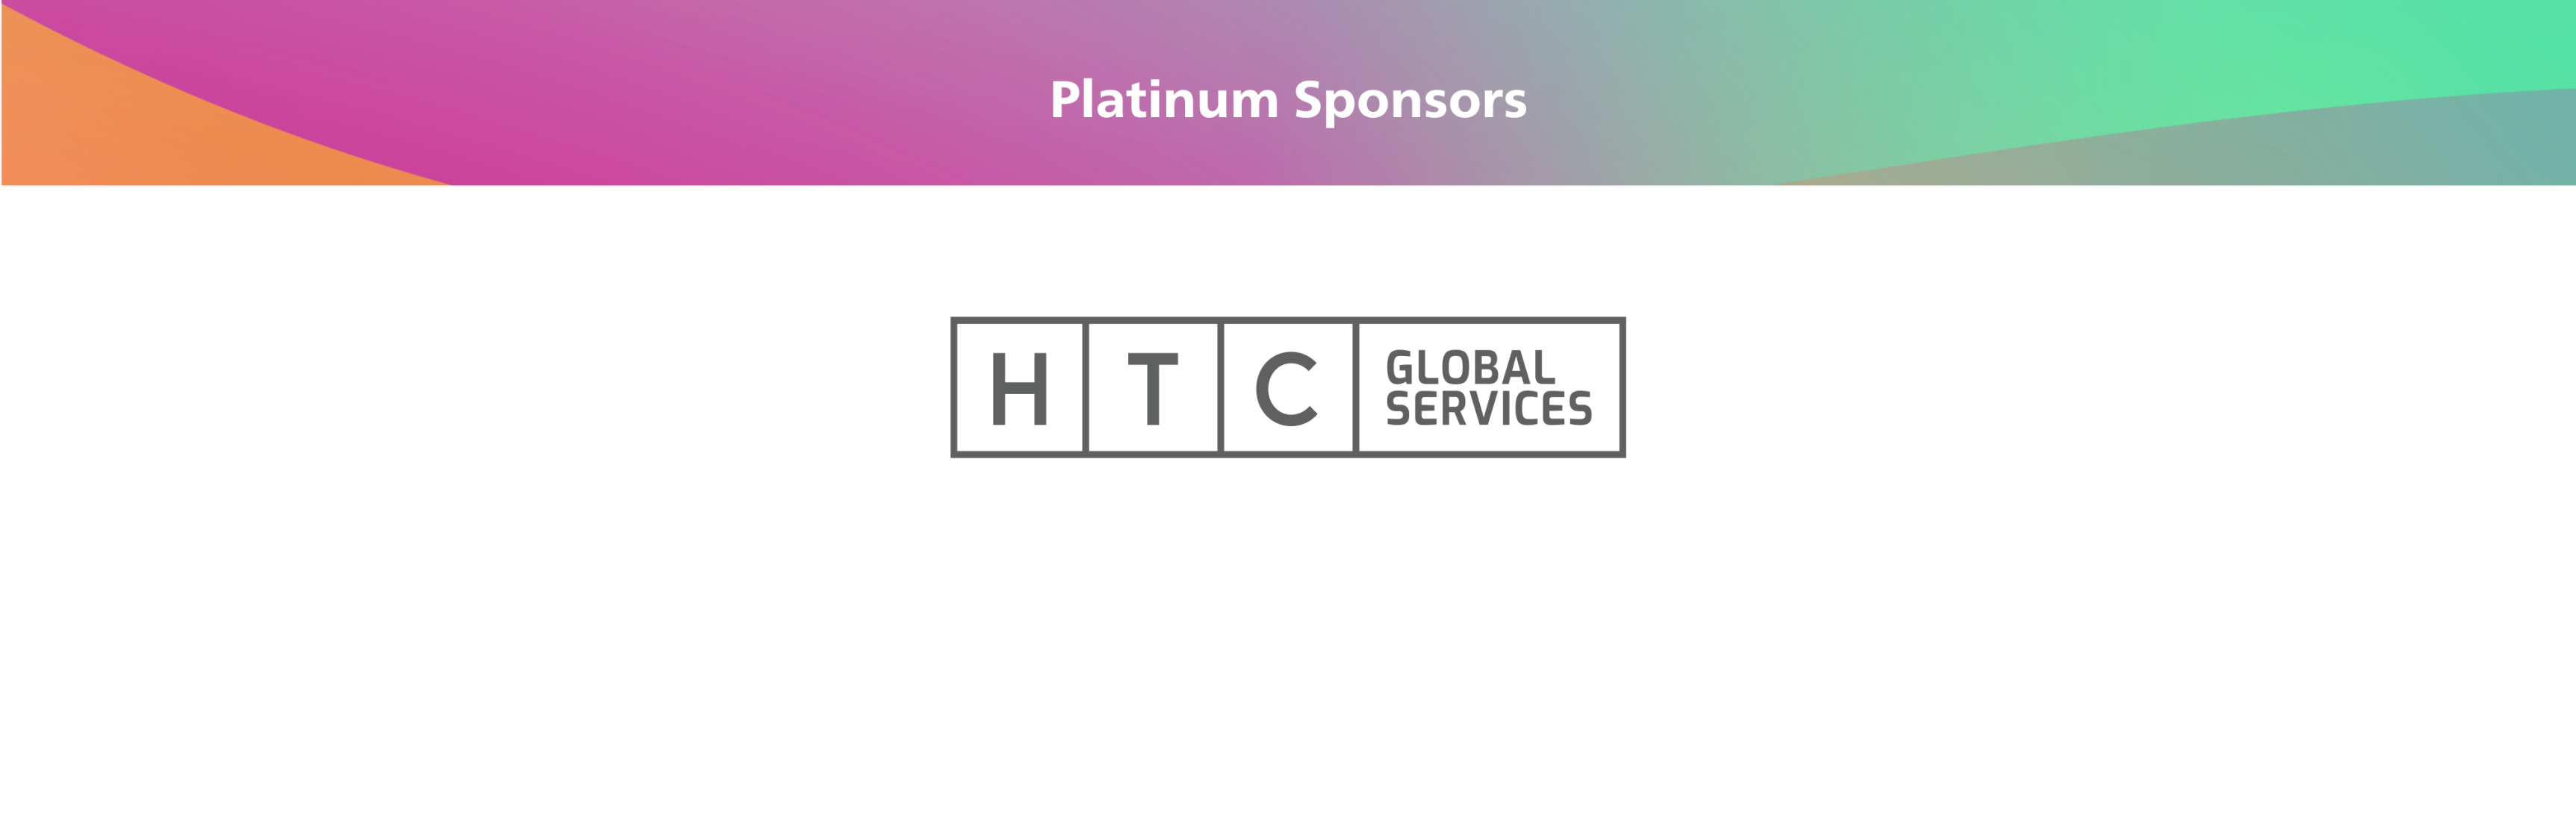 Dream Show Platinum sponsor HTC